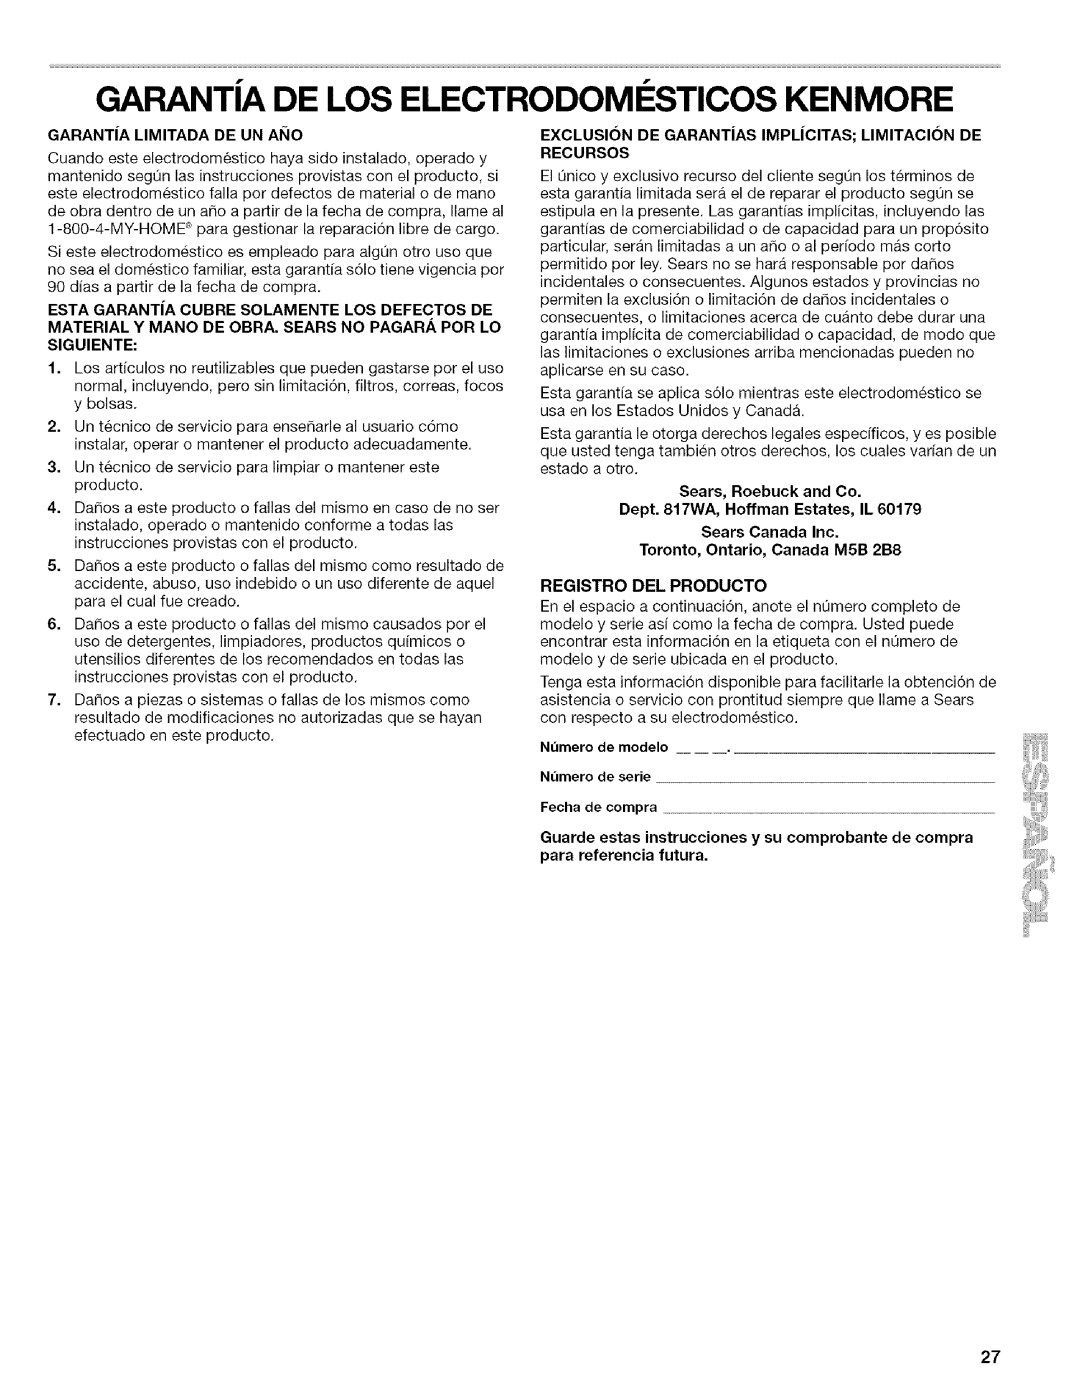 Kenmore 10656833603 manual Garanta De Los Electrodomesticos Kenmore, Garant|A Limitada De Un Ai_Io, Sears, Roebuck and Co 